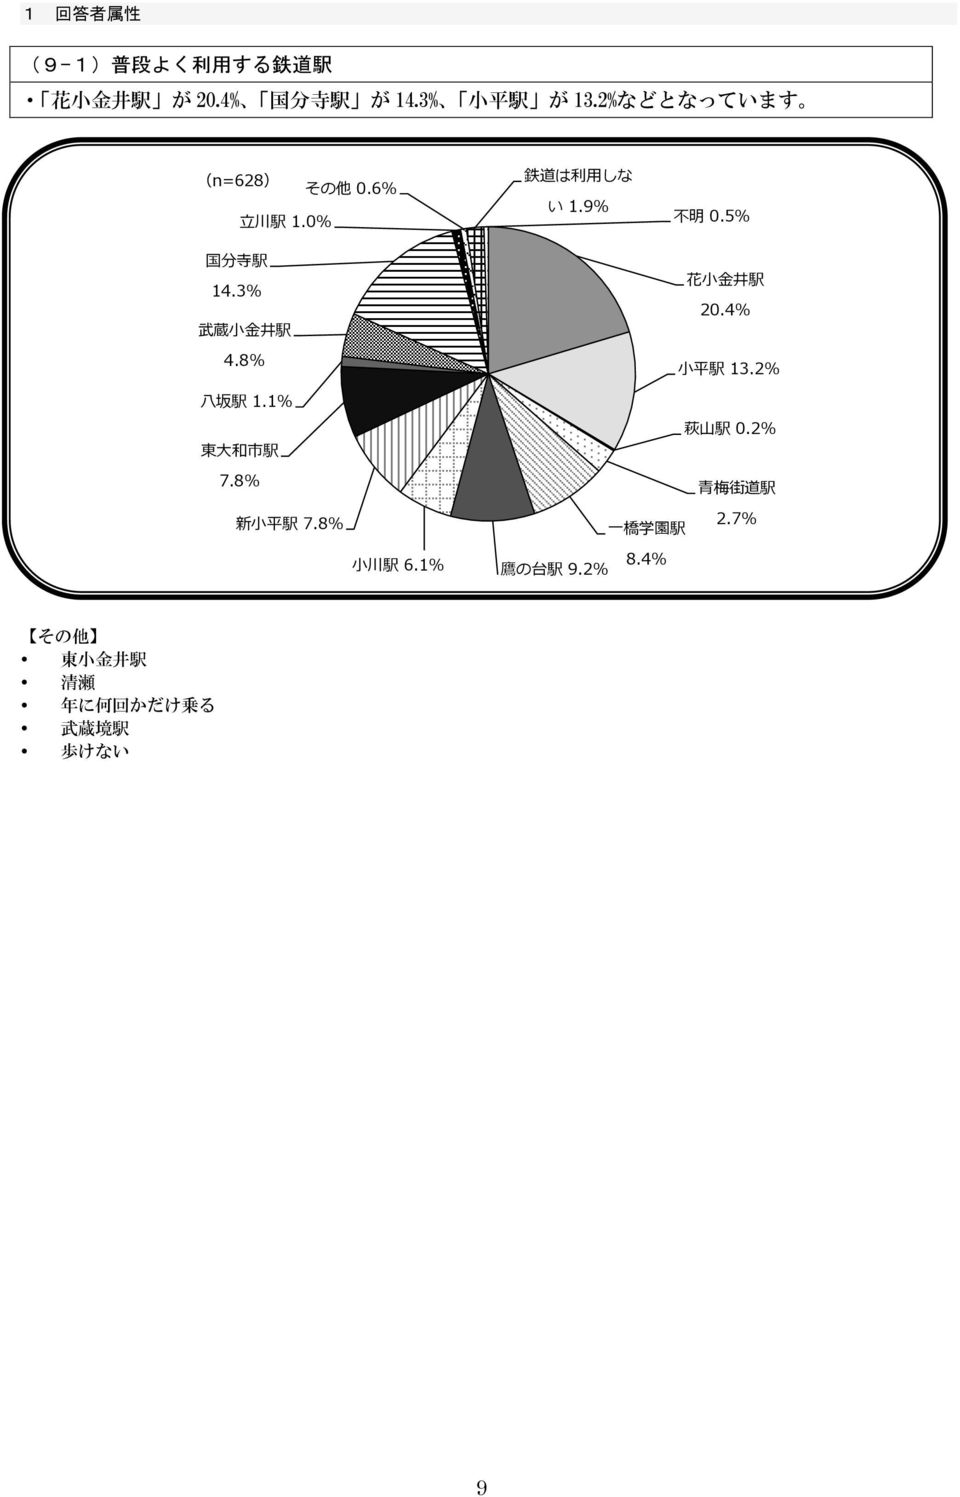 9% 0.5% 花 小 金 井 駅 20.4% 小 平 駅 13.2% 八 坂 駅 1.1% 東 大 和 市 駅 7.8% 新 小 平 駅 7.8% 小 川 駅.